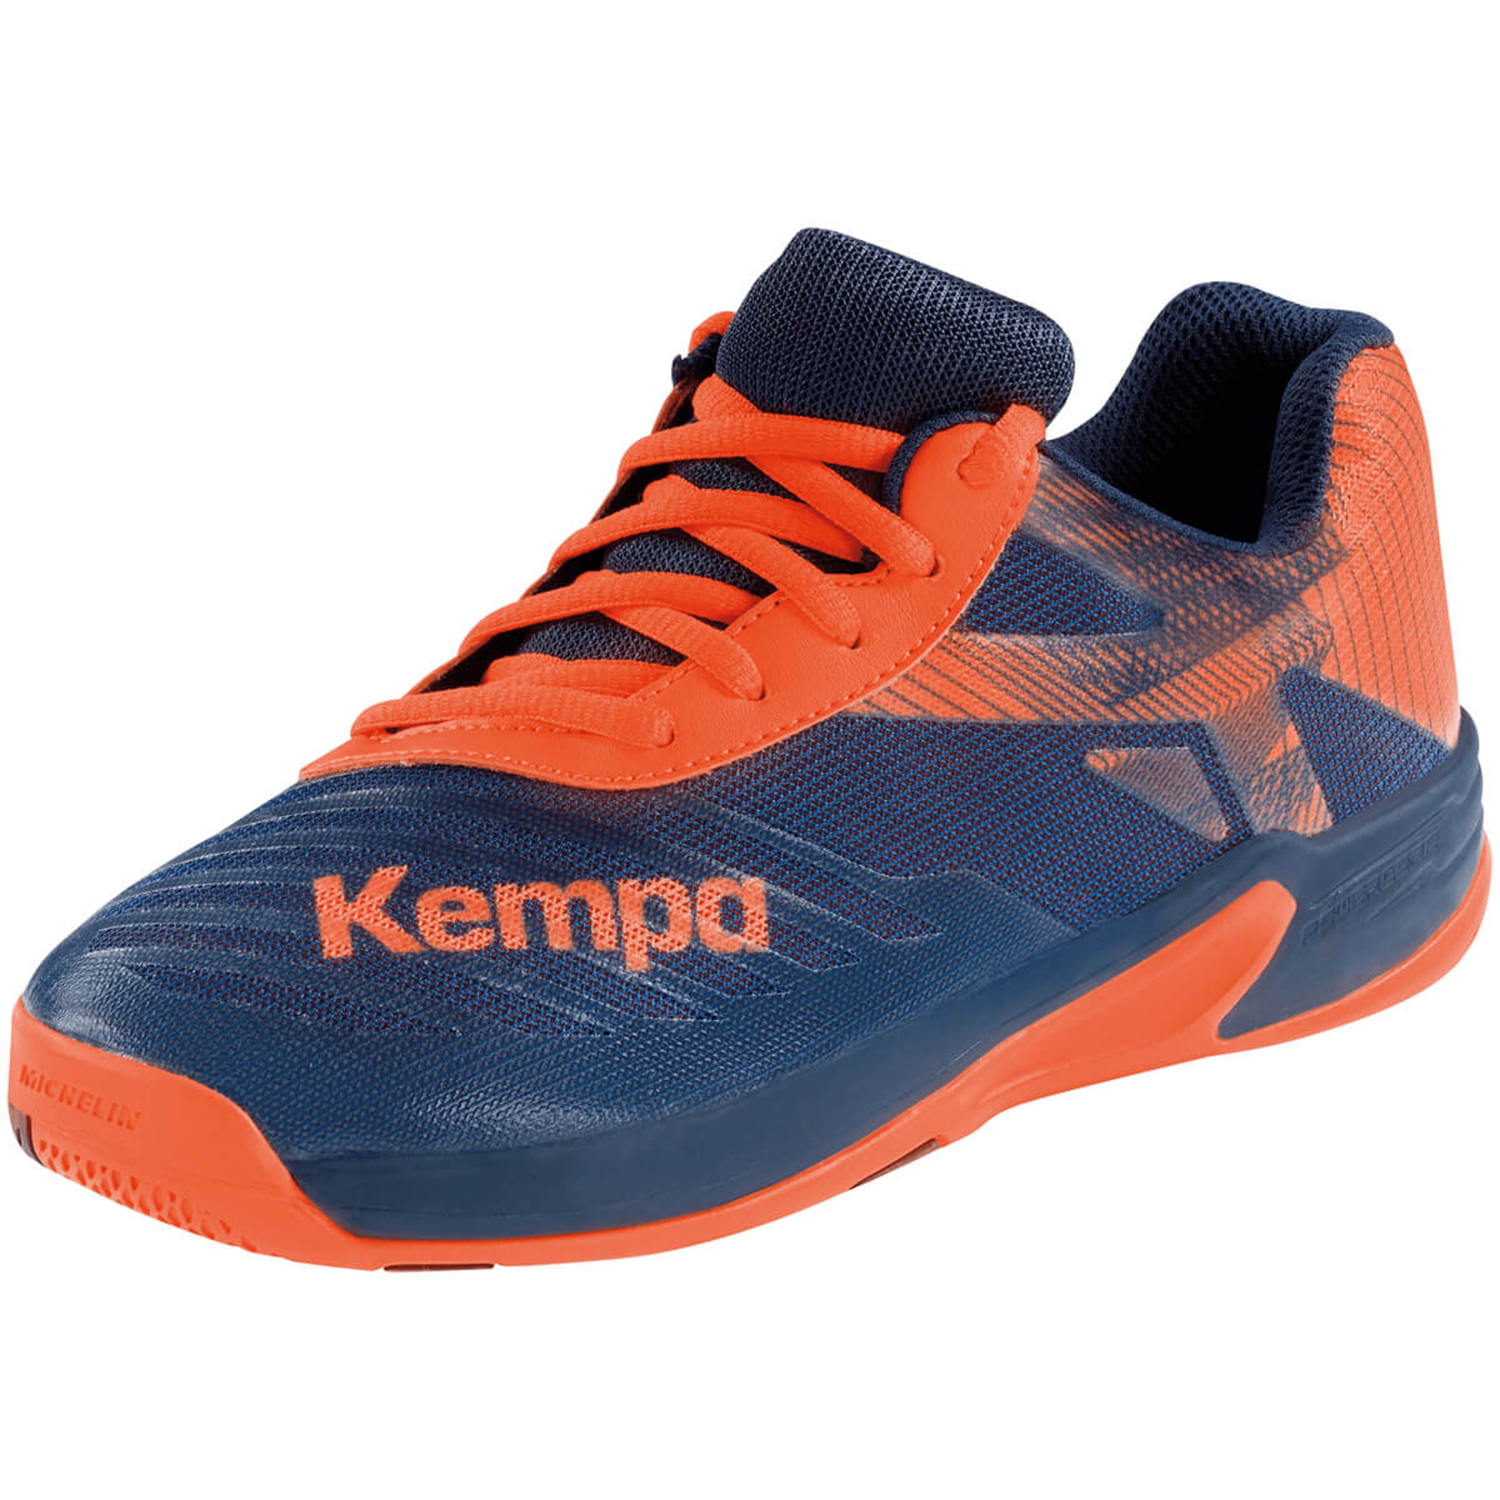 Kempa WING 2.0 Junior Hallenschuh Handball 200856007 Navy / Orange 